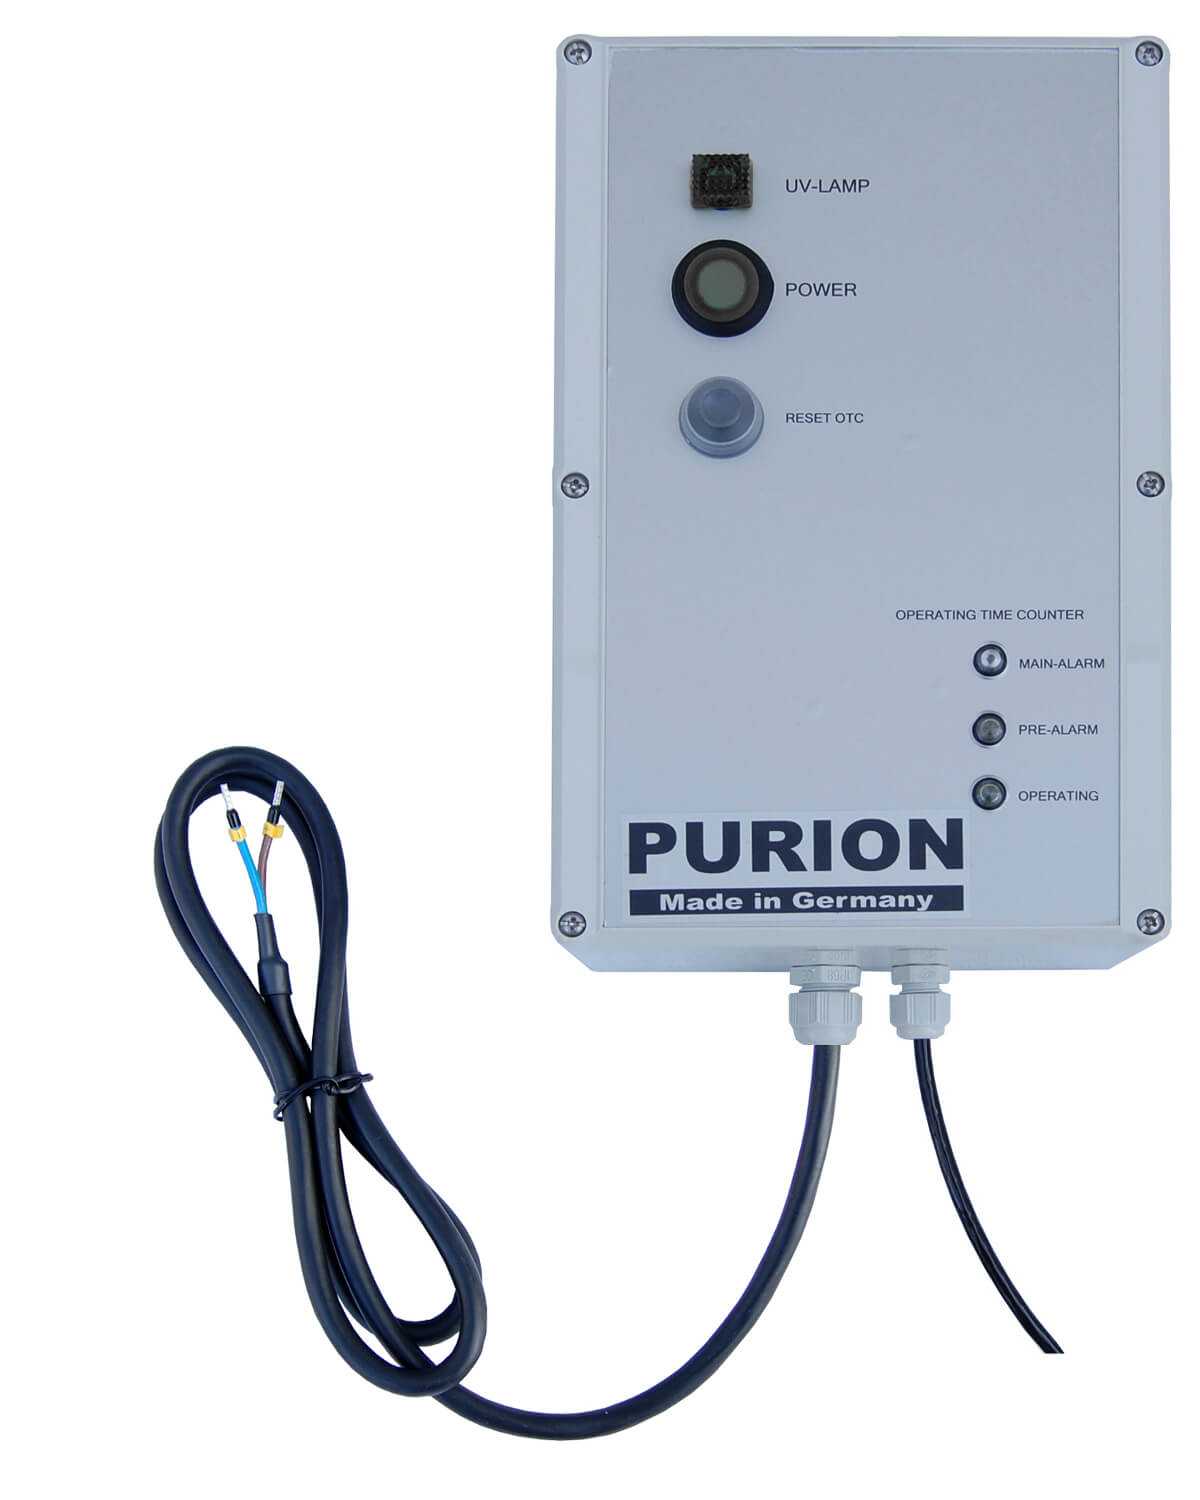 Die PURION GmbH produziert und vertreibt ein hochwertiges Kompaktsystem MAX active, das eine effiziente UV-C-Anlage und einen effektiven Aktivkohlefilter umfasst.